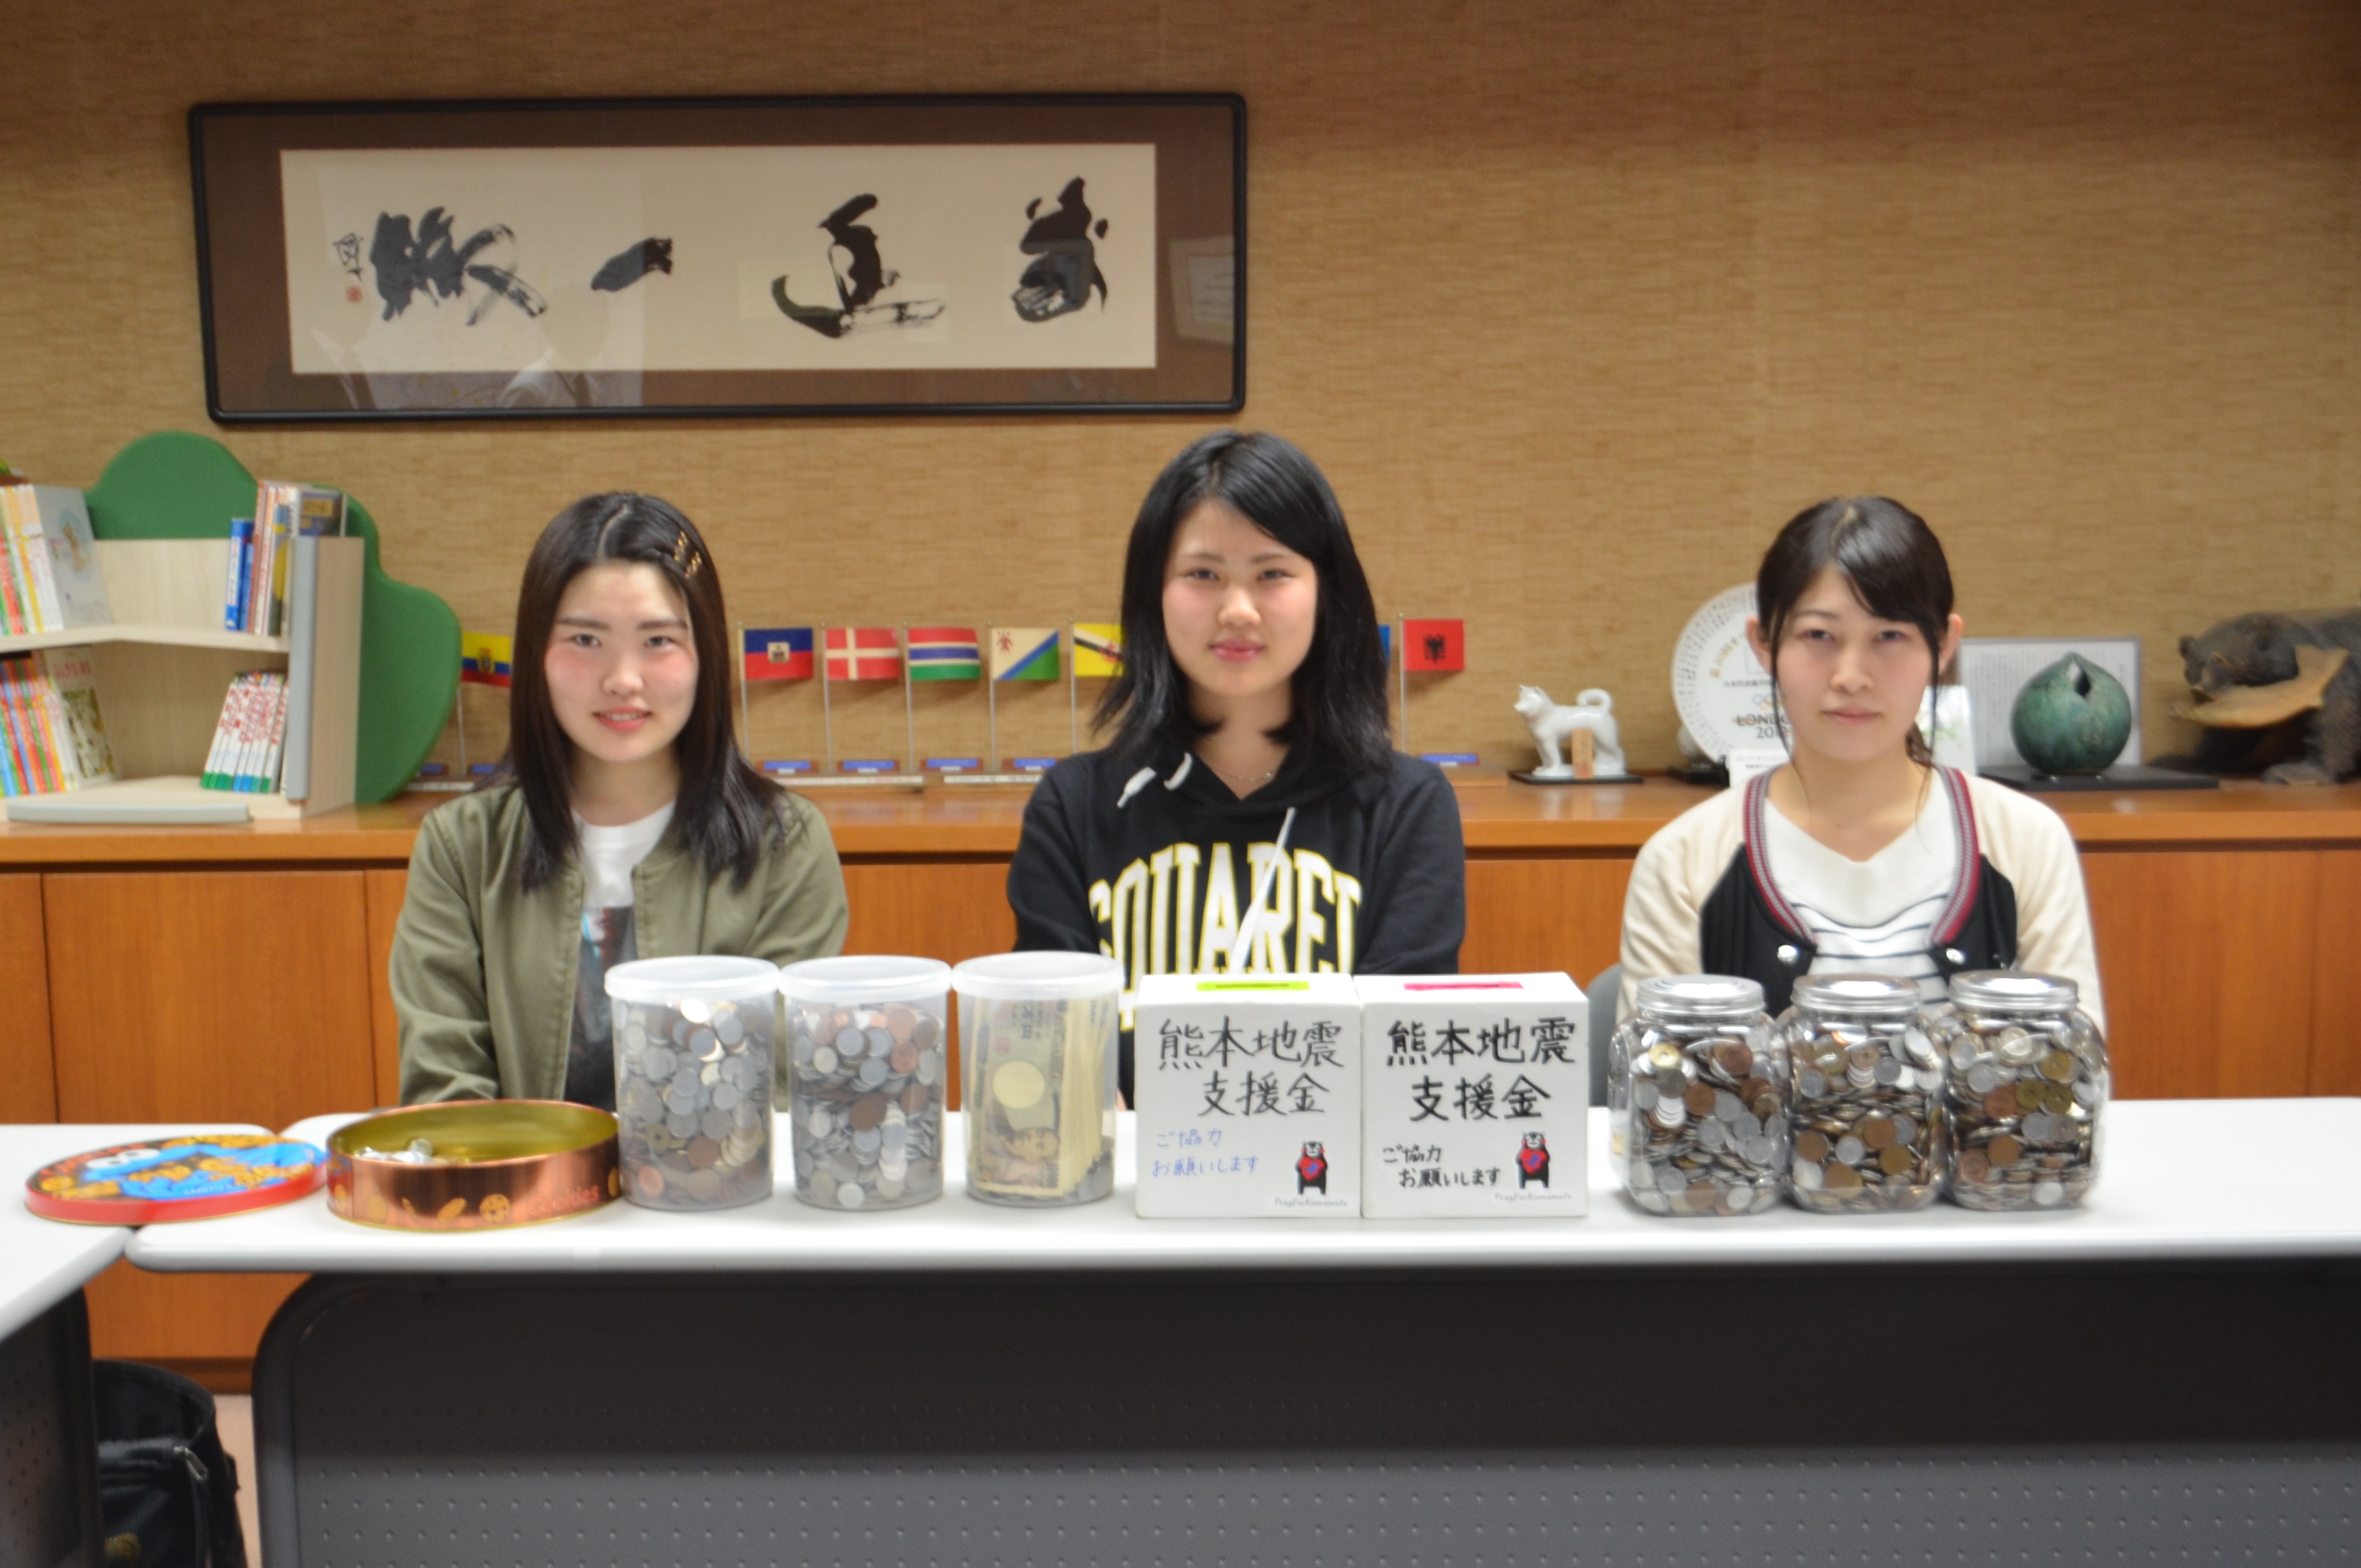 熊本地震義援金と募金活動の中心となった学生の画像